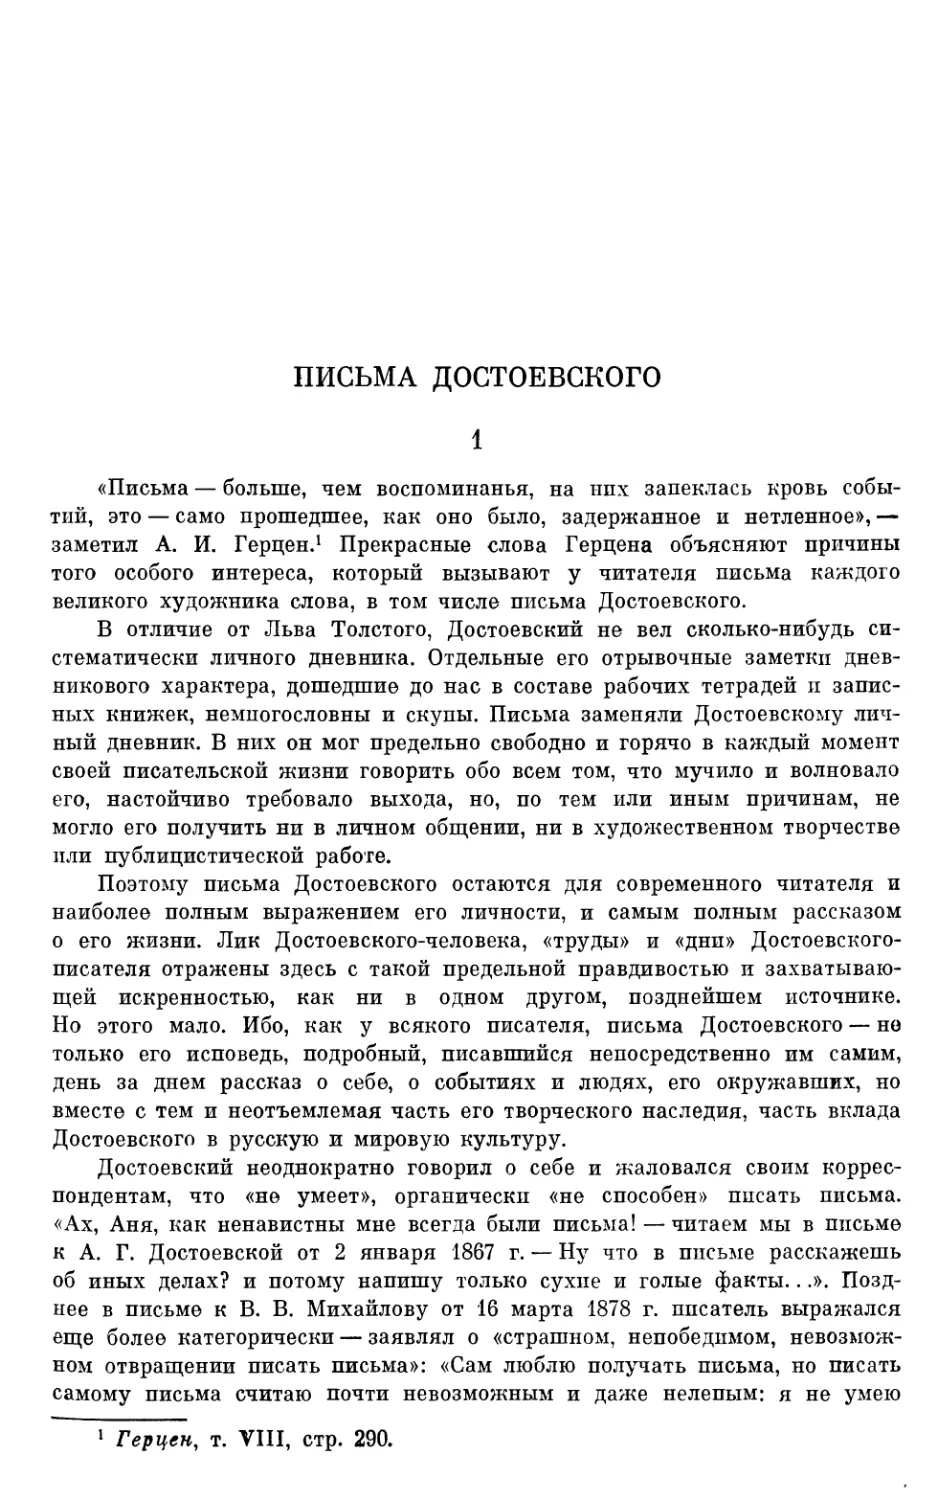 Г. М. Фридлендер. Письма Достоевского